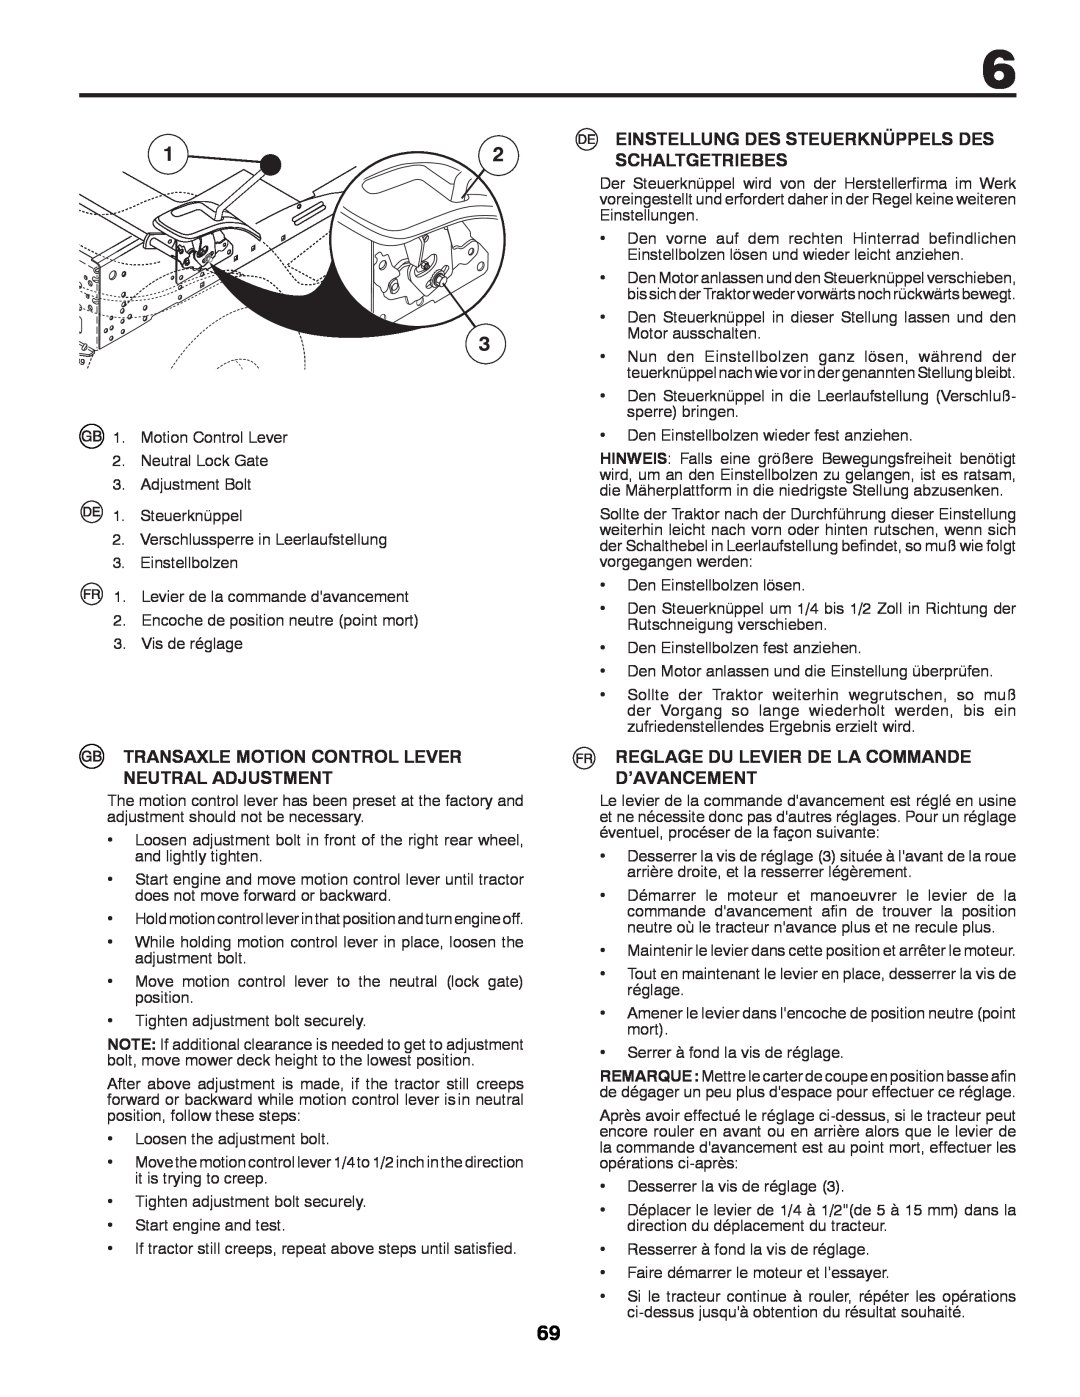 Partner Tech P145107H Transaxle Motion Control Lever Neutral Adjustment, Reglage Du Levier De La Commande D’Avancement 